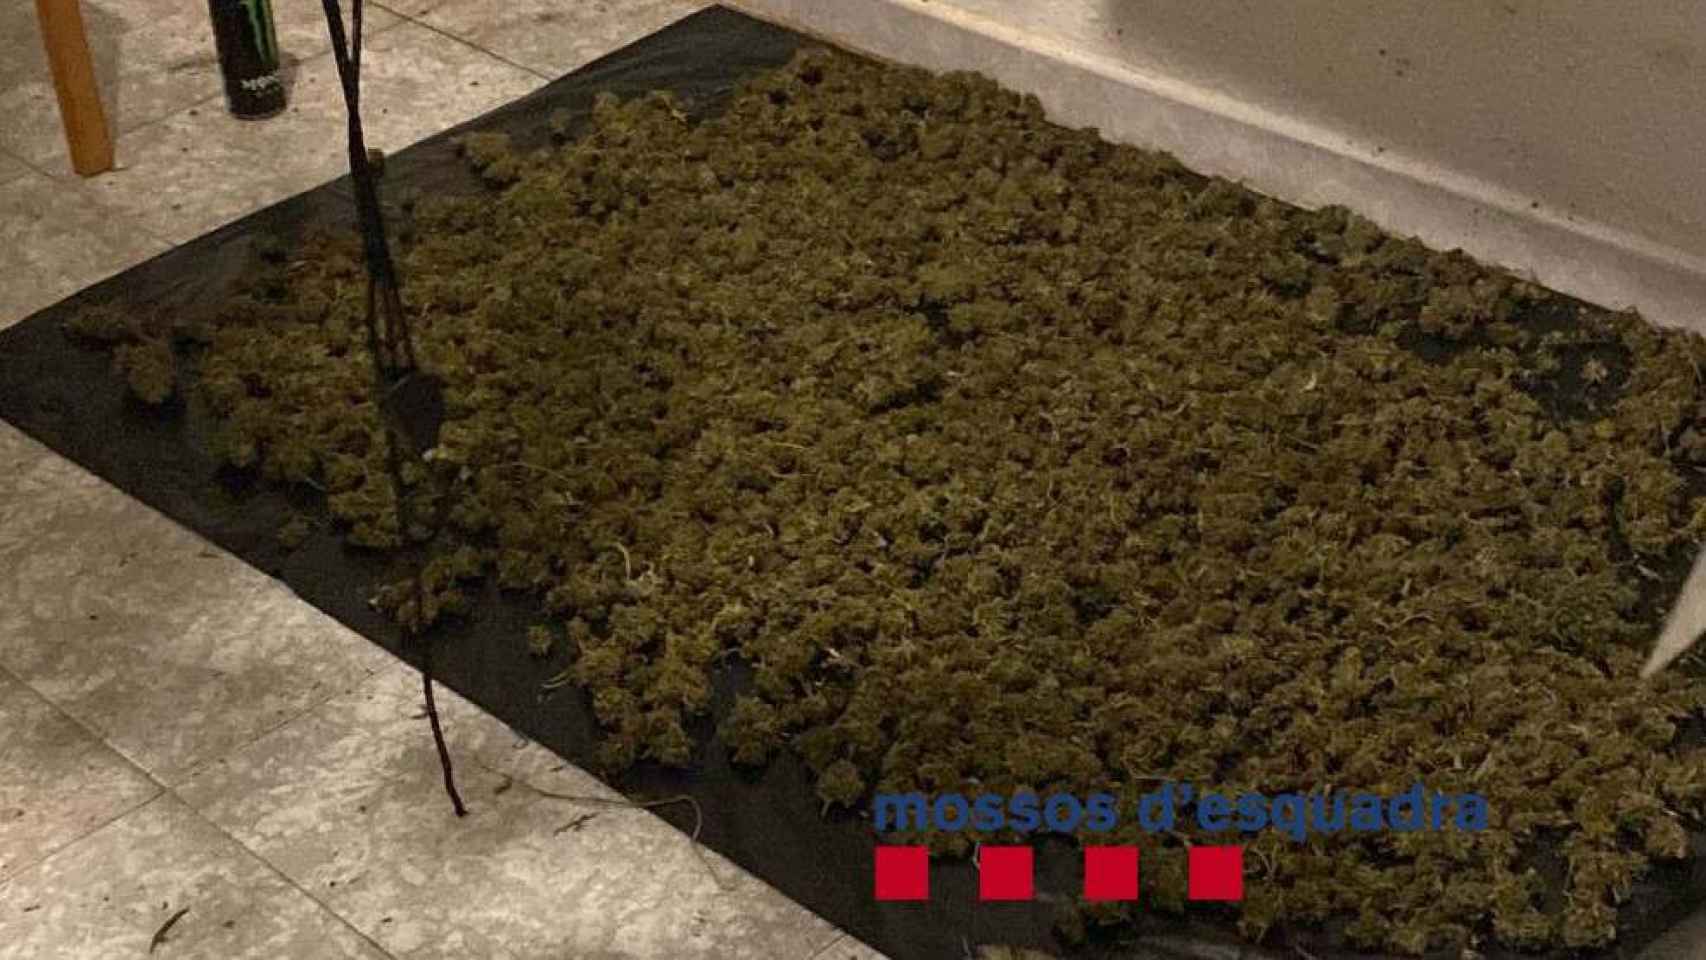 Marihuana requisada en el narcopiso okupa de Santa Coloma de Gramenet / MOSSOS D'ESQUADRA